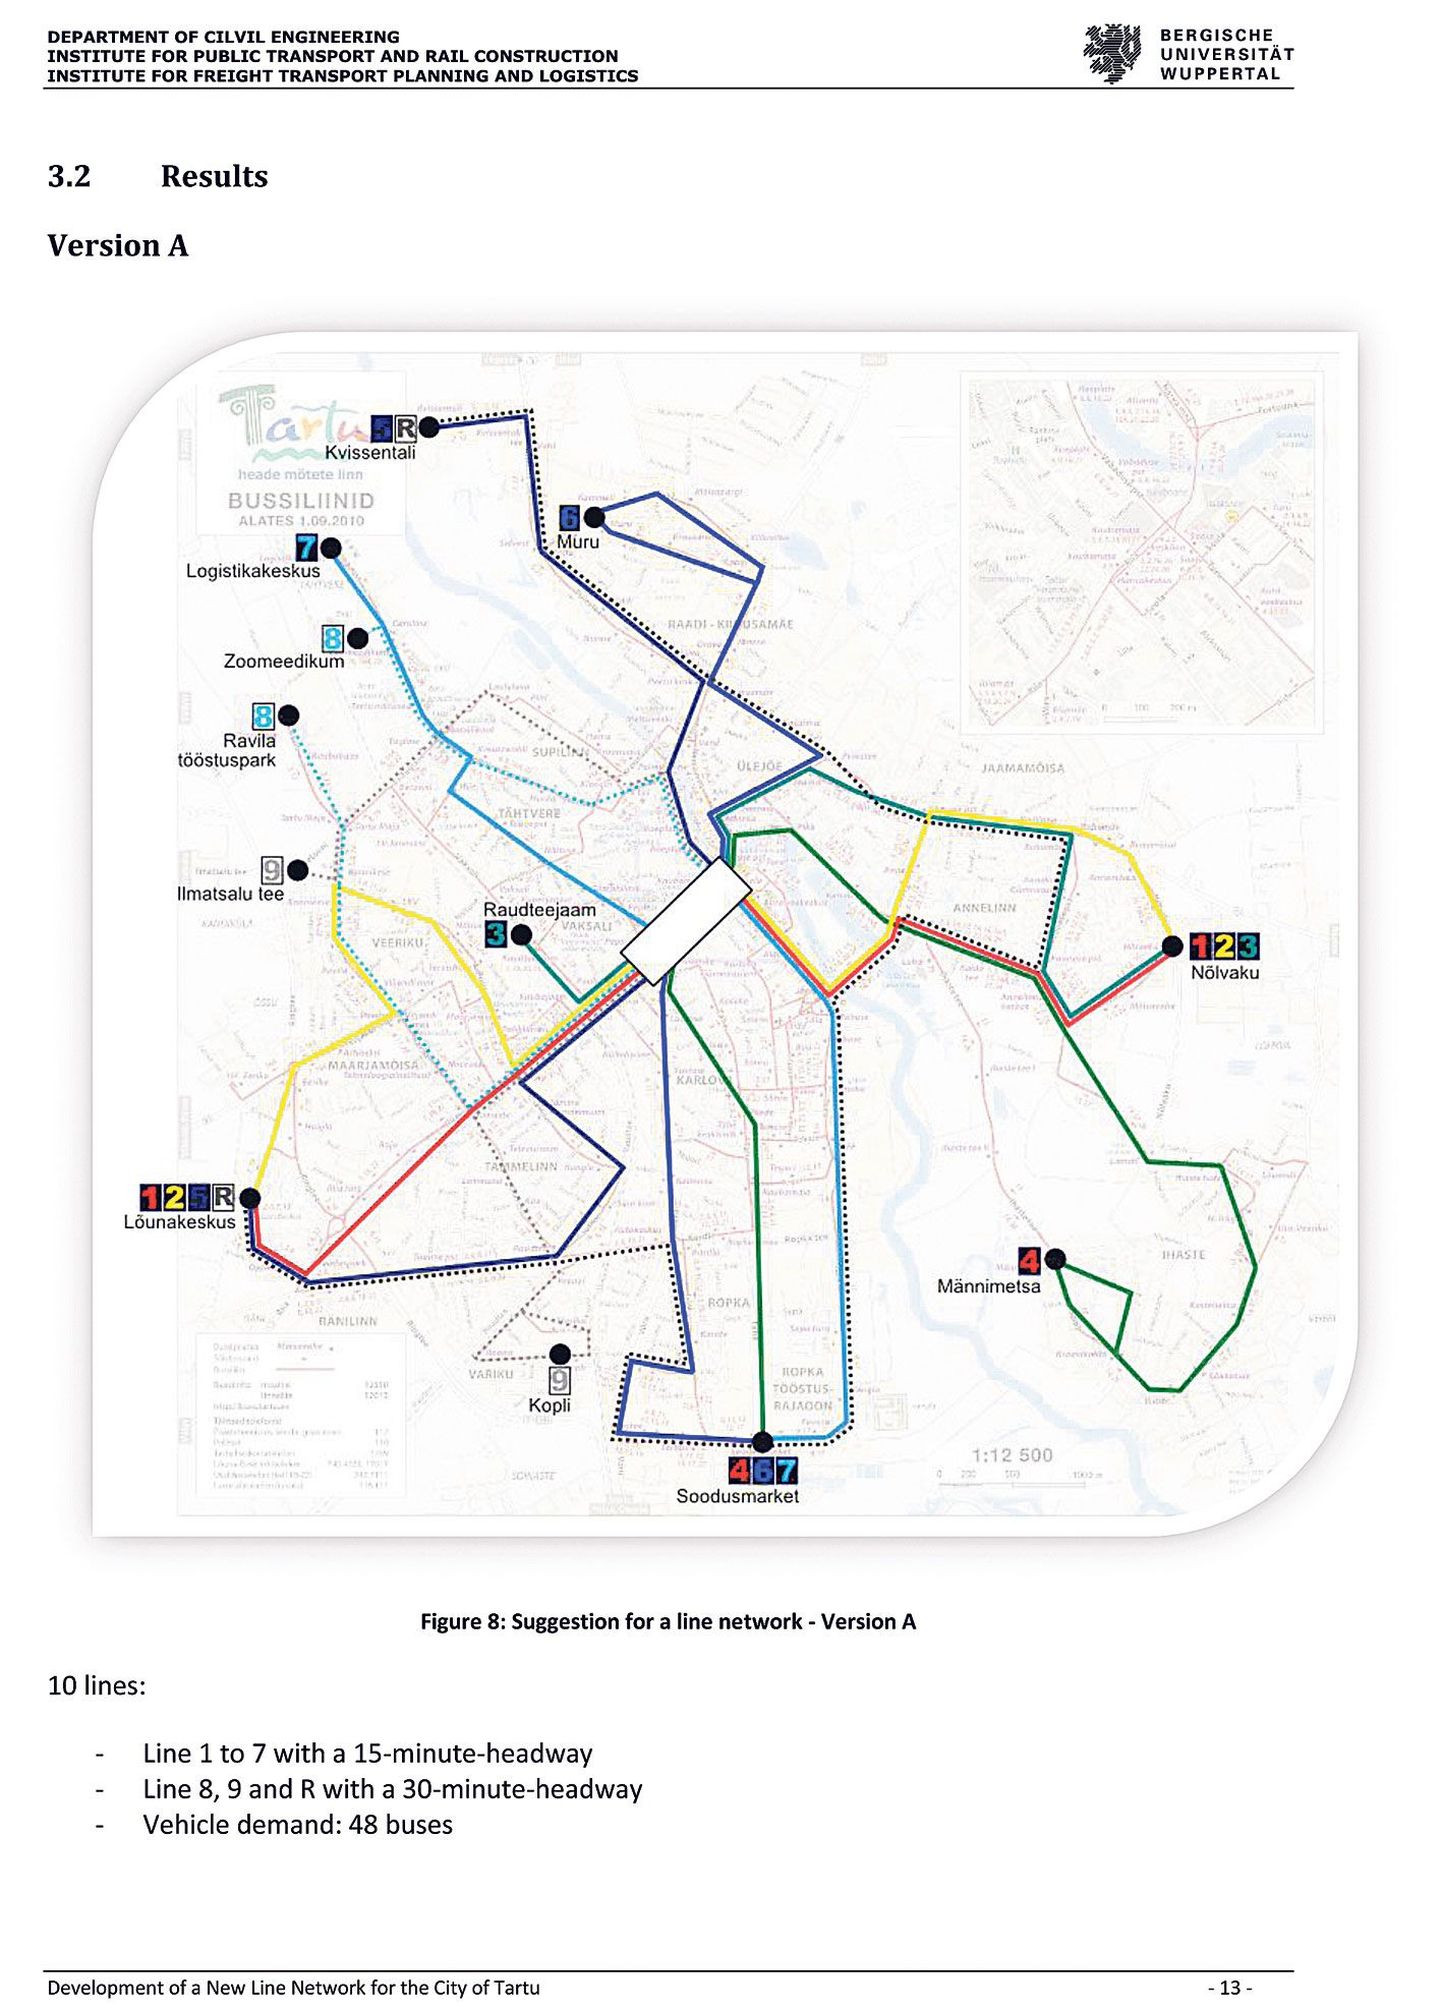 Aastal 2012 Tartu ühistranspordiliiklust uurinud Saksa teadlased pakkusid linnale välja senisest lihtsama skeemi.